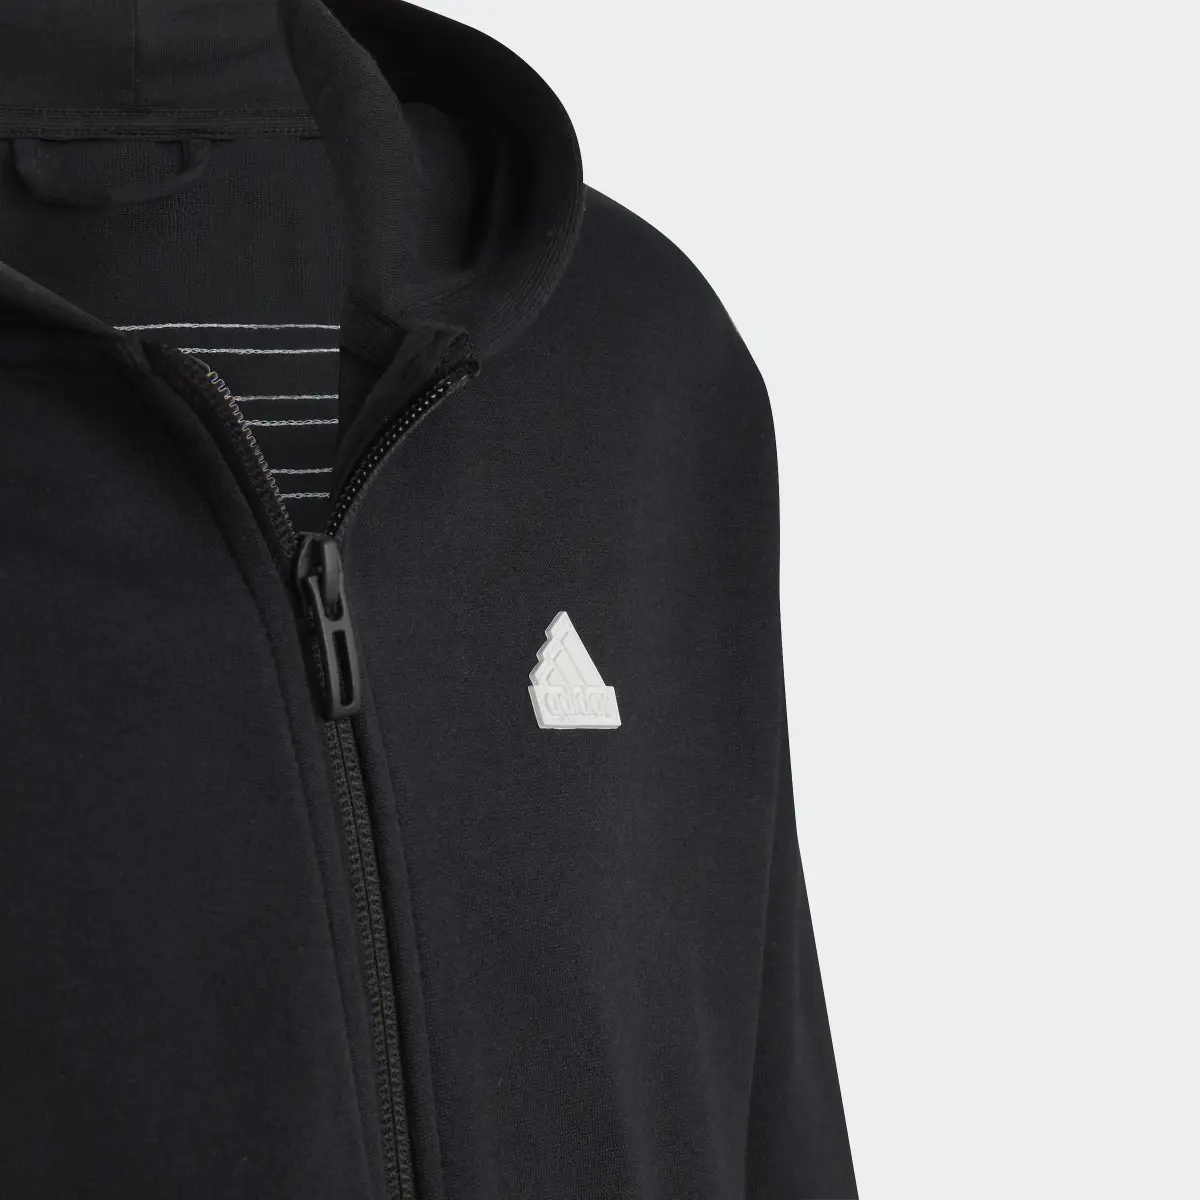 Adidas Veste à capuche entièrement zippée 3-Stripes Future Icons. 3